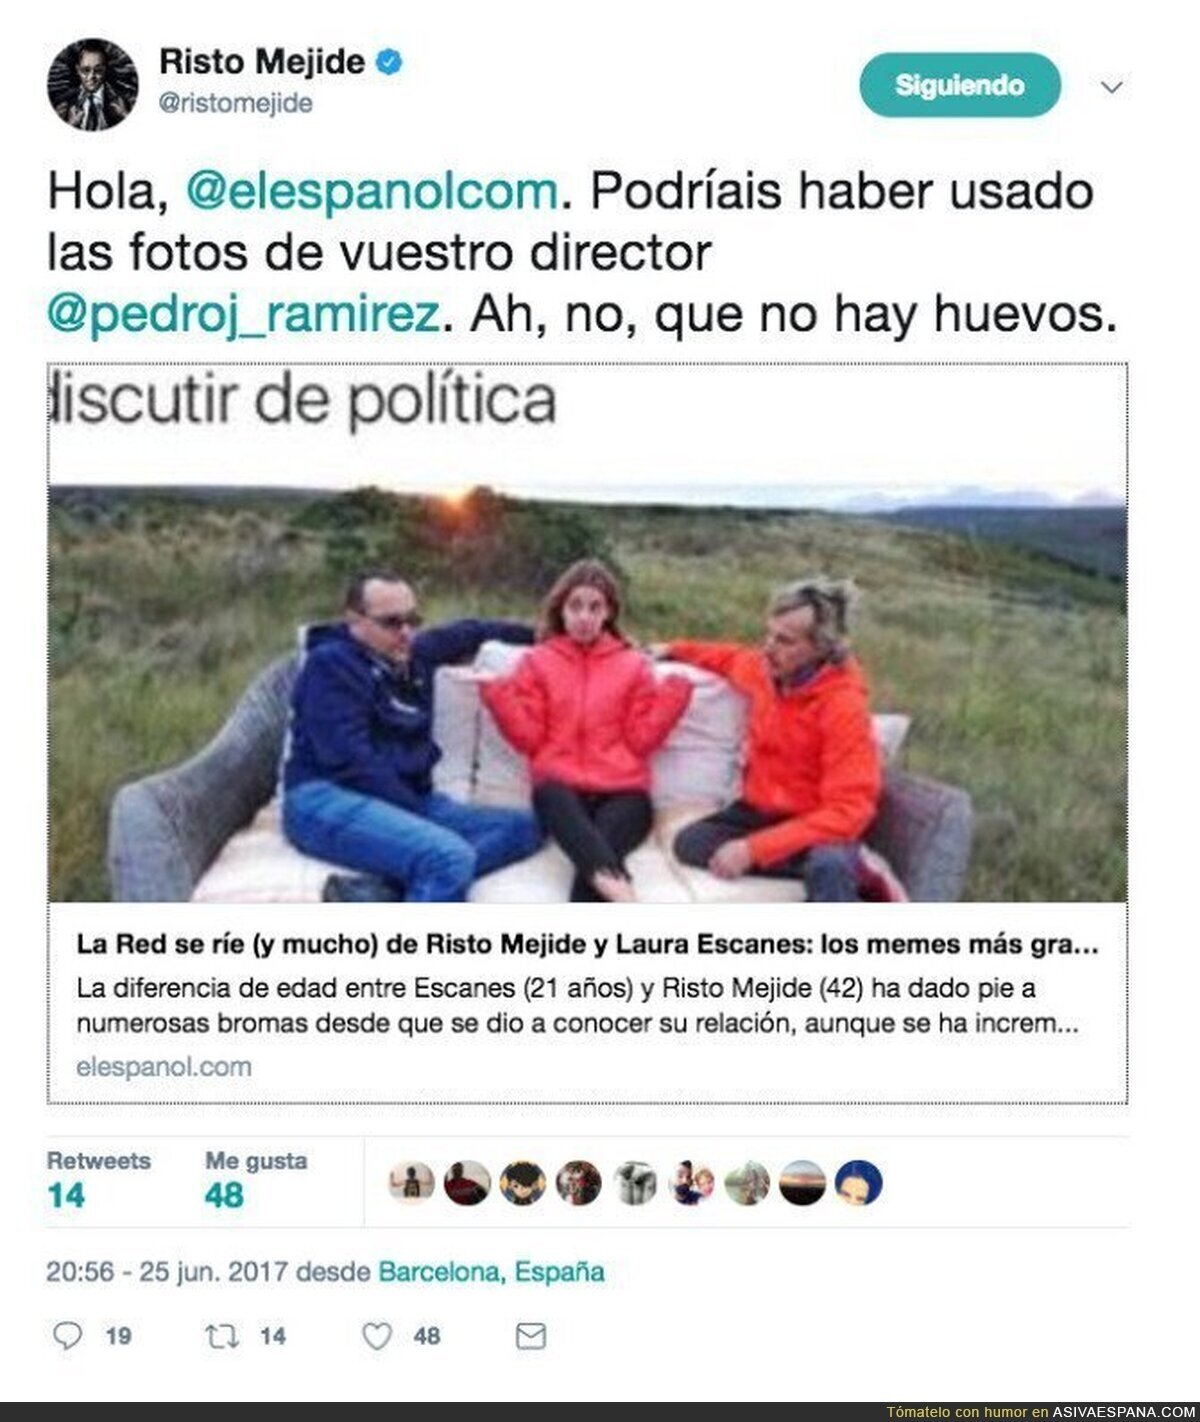 Risto arremete contra el diario "El Español" con un duro tuit por una publicación contra su pareja